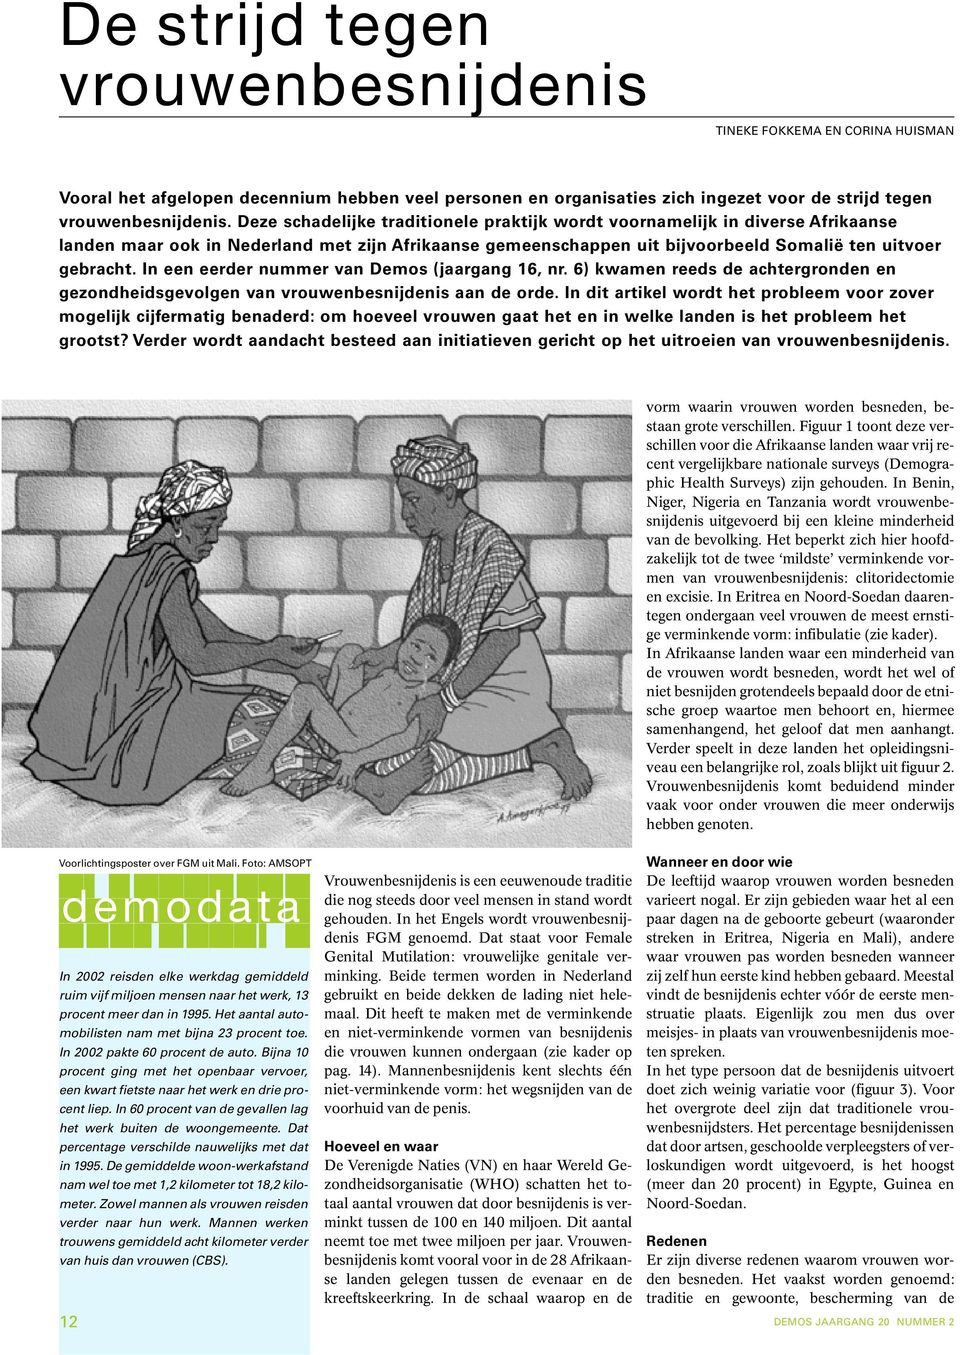 In een eerder nummer van Demos (jaargang 16, nr. 6) kwamen reeds de achtergronden en gezondheidsgevolgen van vrouwenbesnijdenis aan de orde.